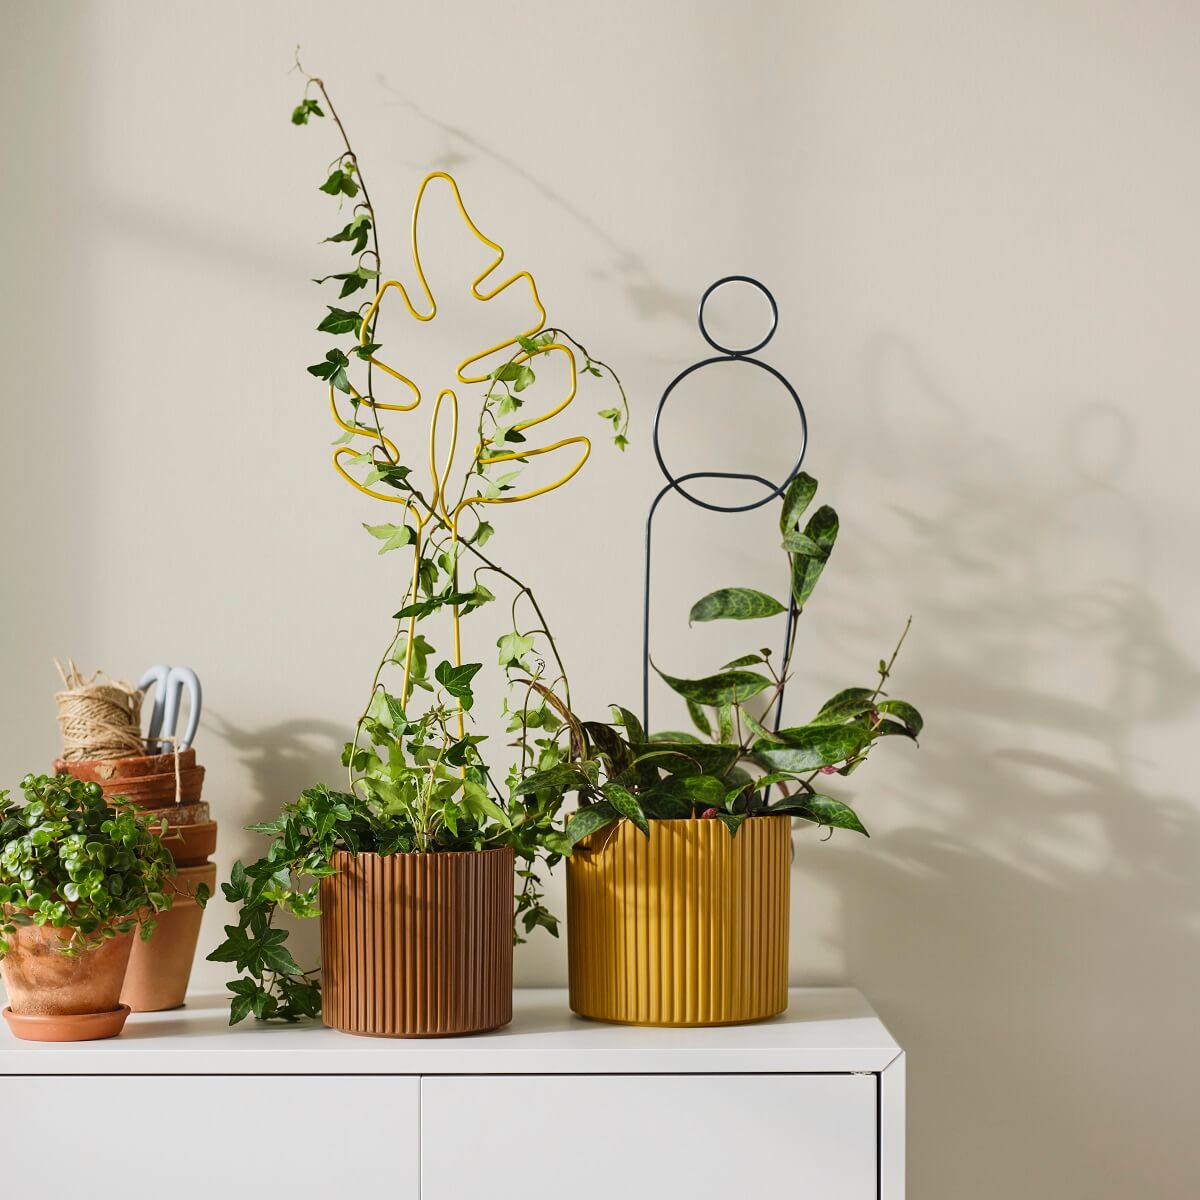 ikea-daksjus-new-collection-plants